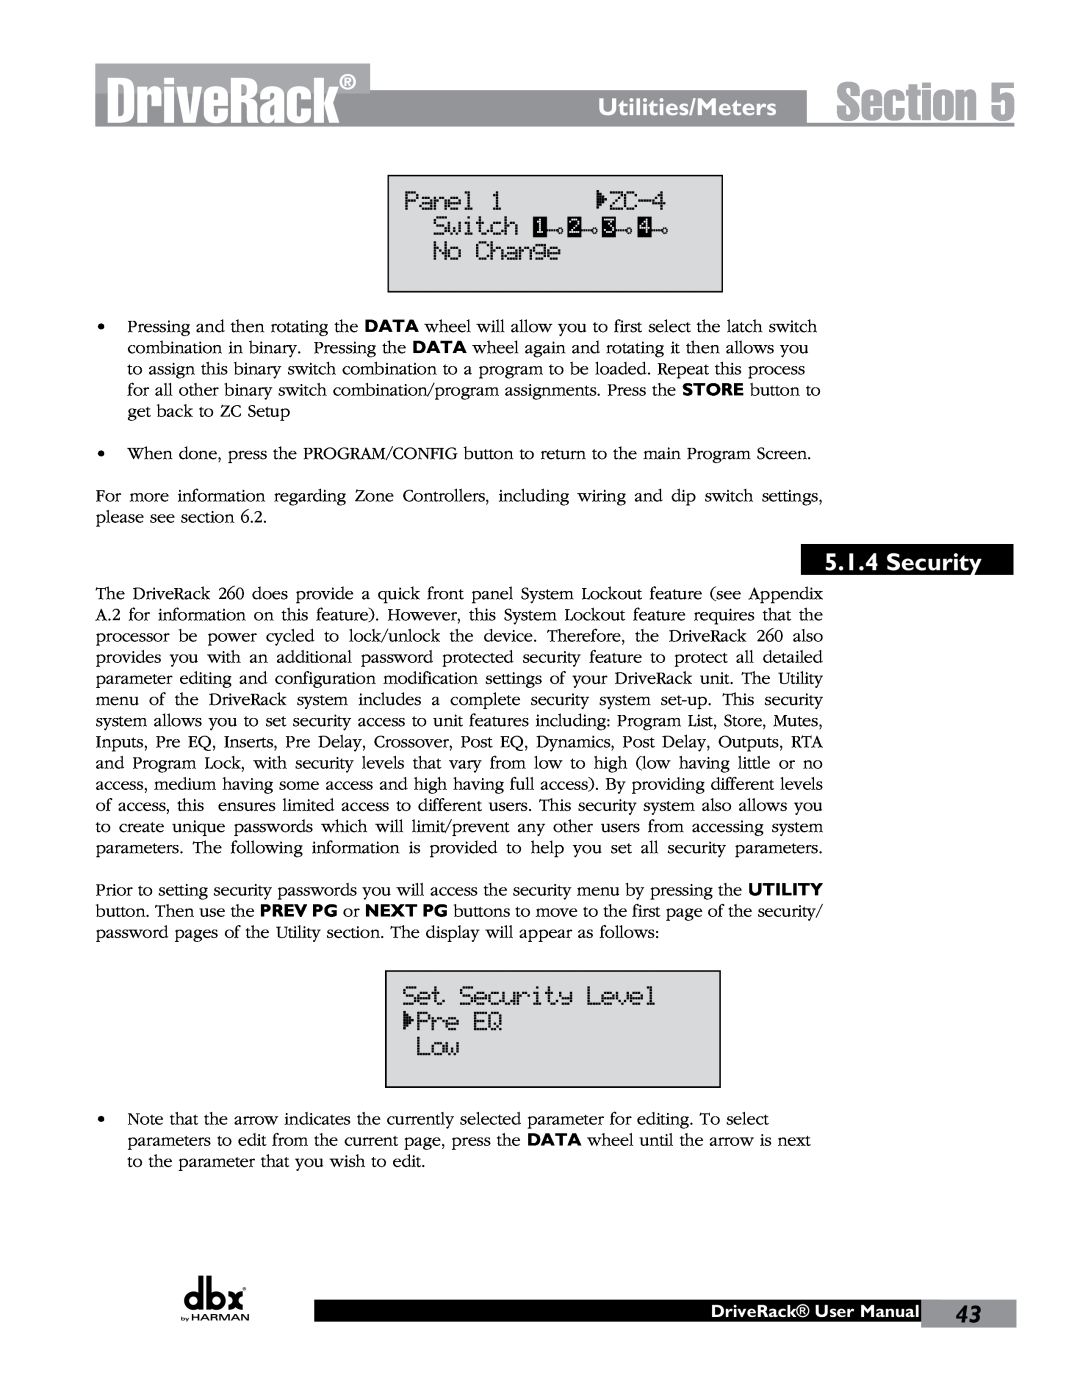 JBL 260 user manual Section, Utilities/Meters, Security, DriveRack User Manual 